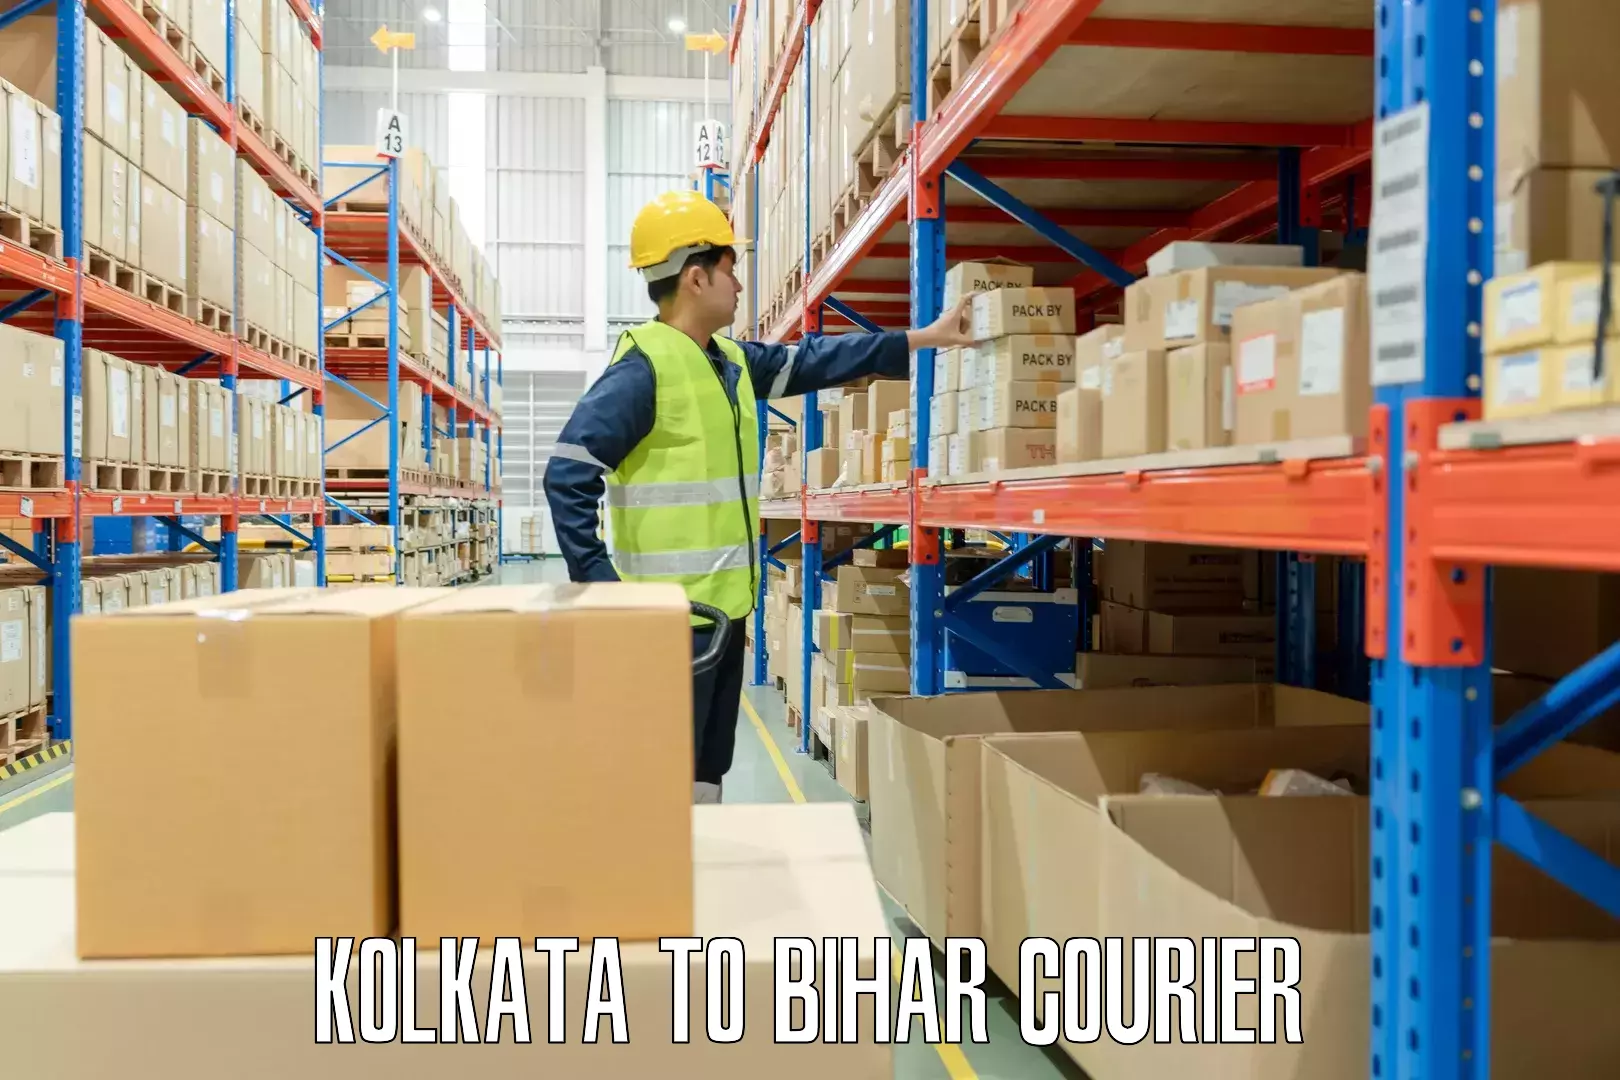 Luggage transit service Kolkata to Bihar